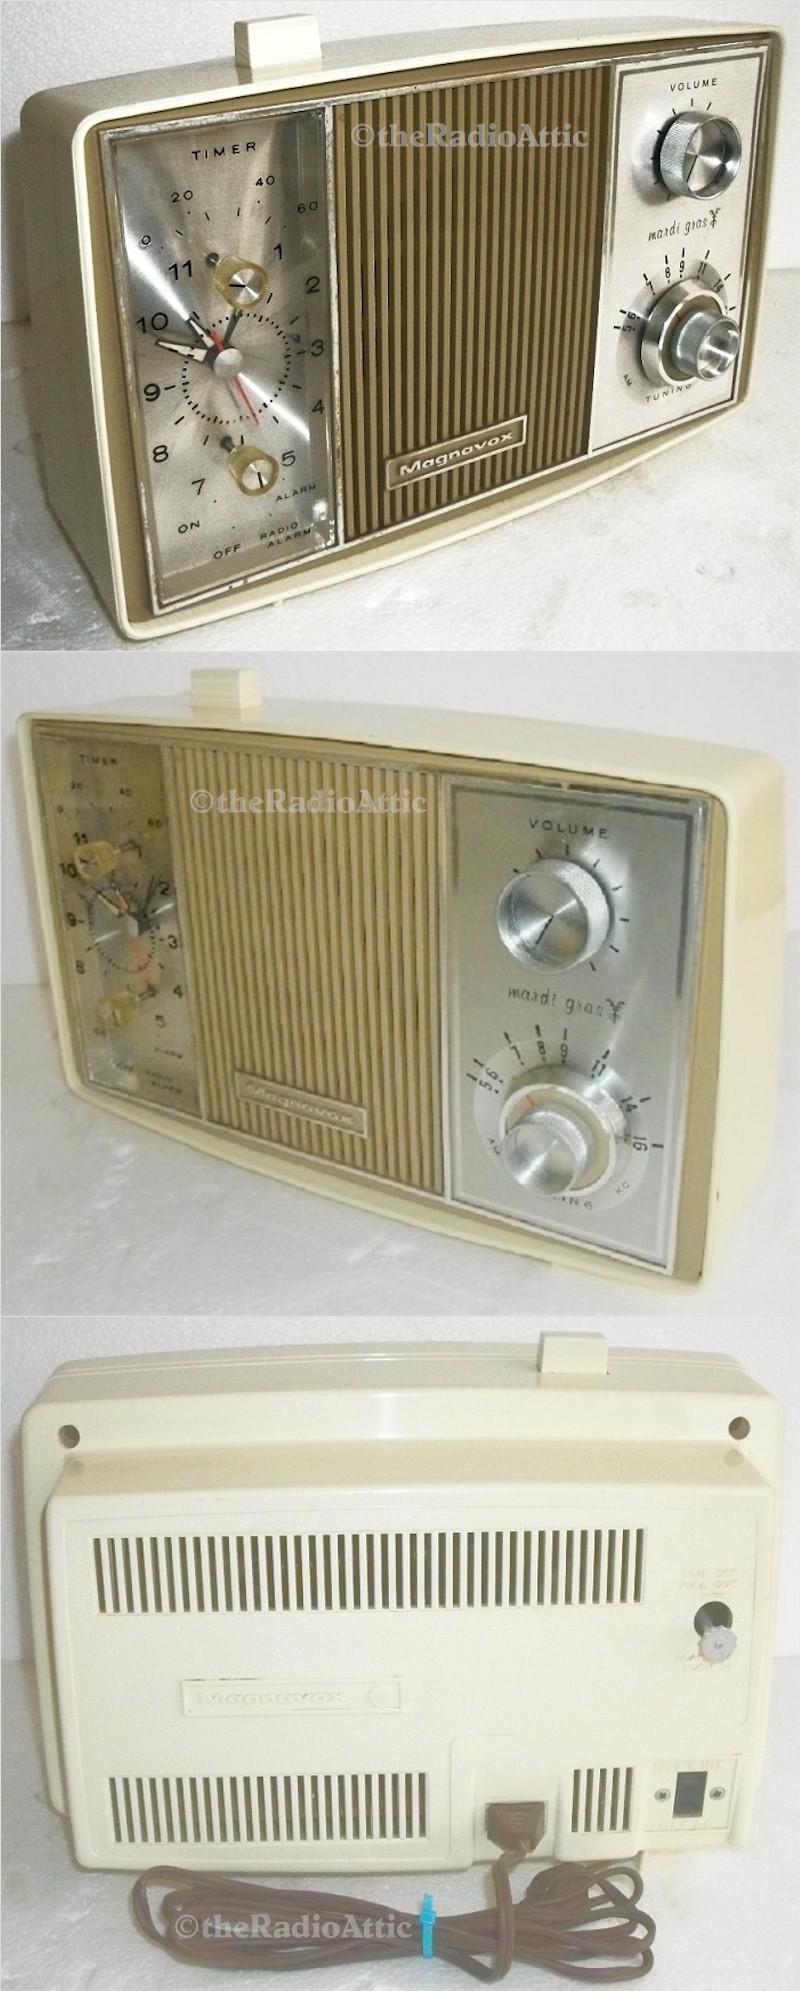 Magnavox Mardi Gras Clock Radio (1960s) - SOLD! - item number 0021315